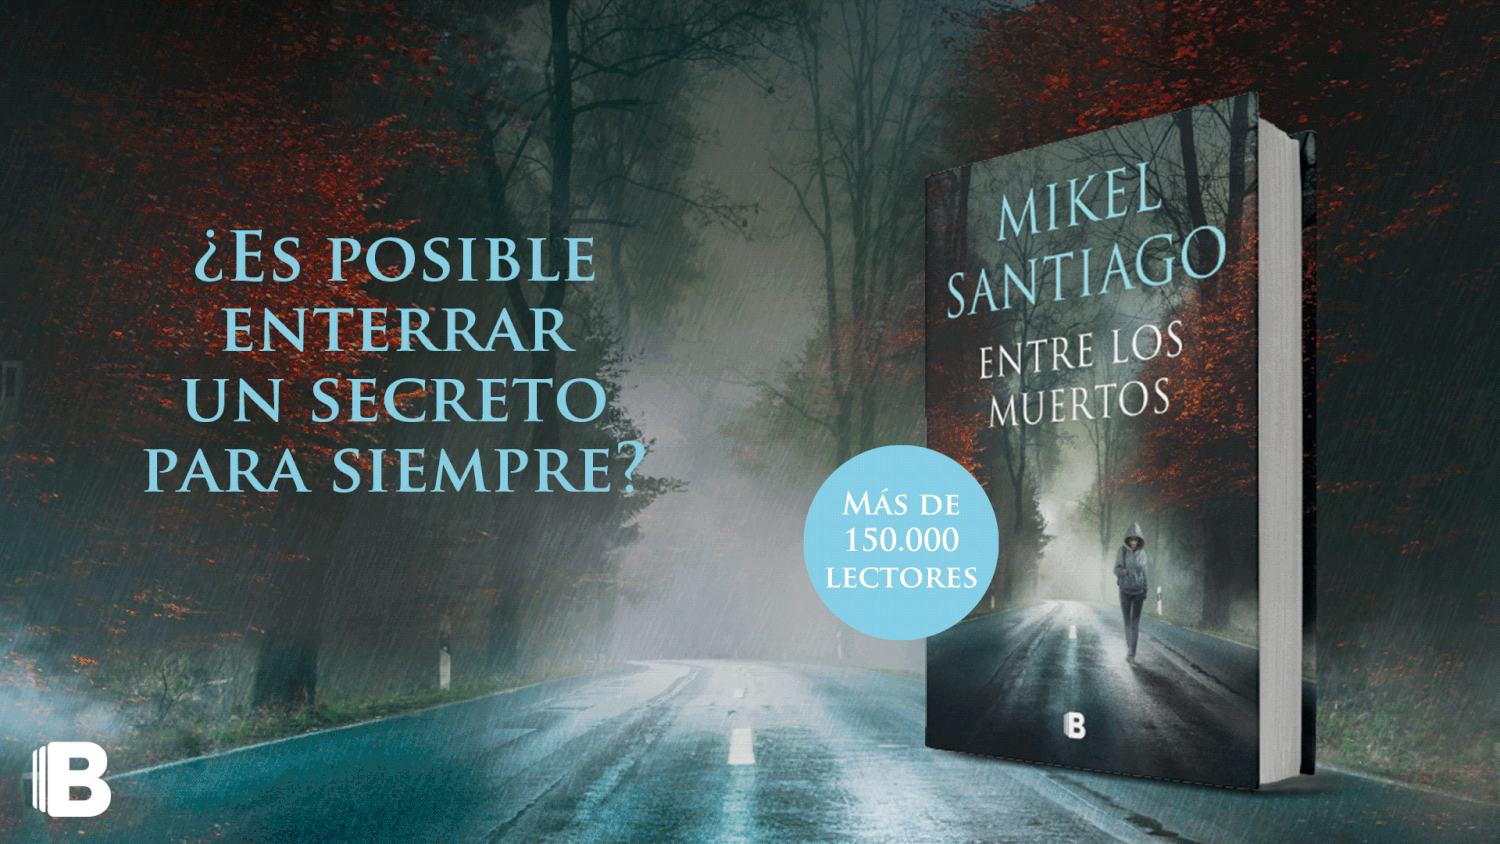 Entre los muertos, Mikel Santiago (Trilogía de Illumbe, 3) 1920x1080